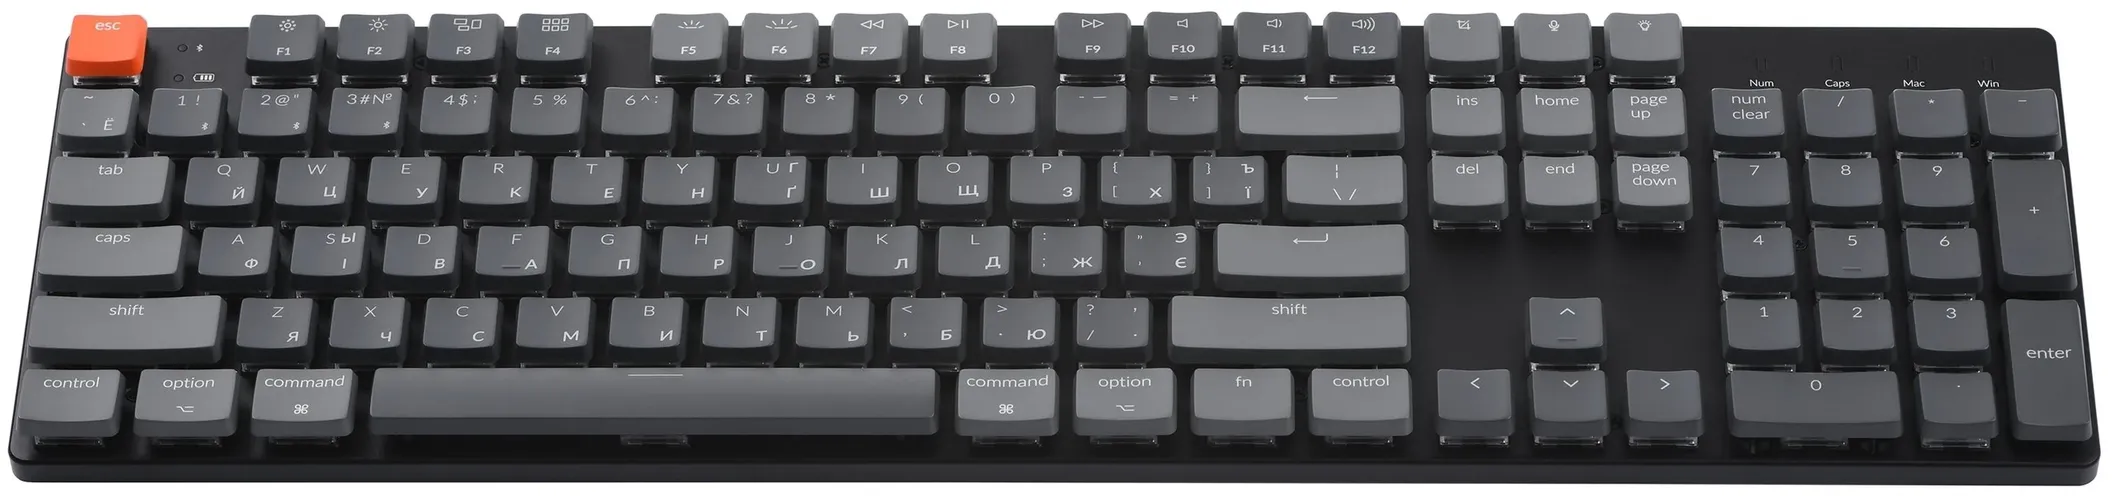 Клавиатура Keychron K5 SE Blue White Led, купить недорого